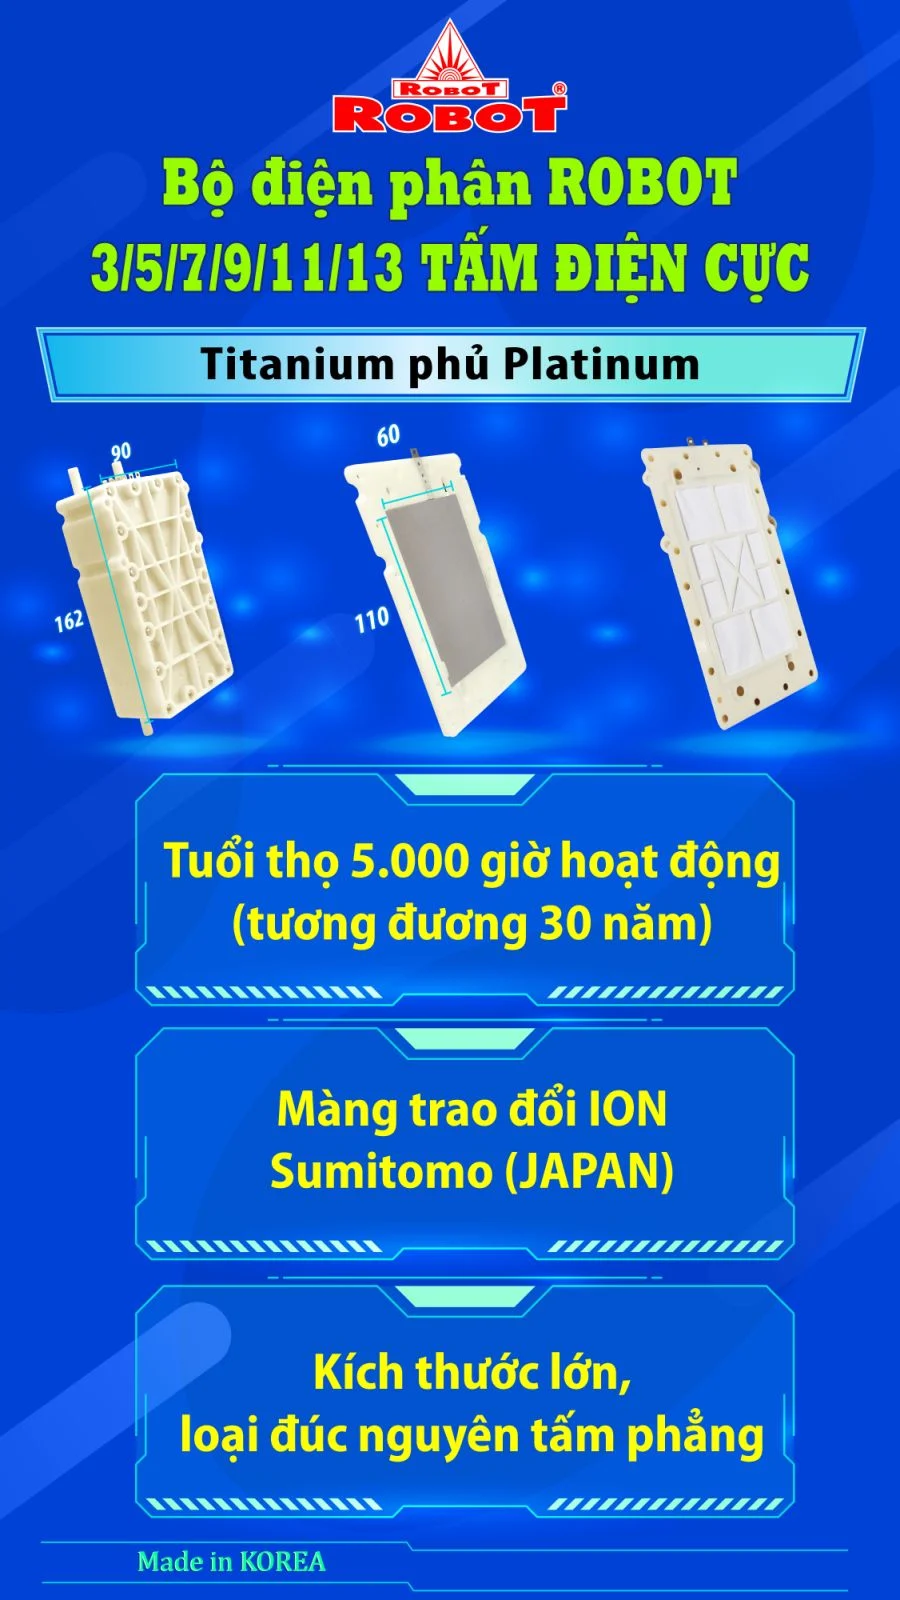 Bộ điện phân đến 3 tấm điện cực Titanium phủ Platinum của IONQUEEN 1113